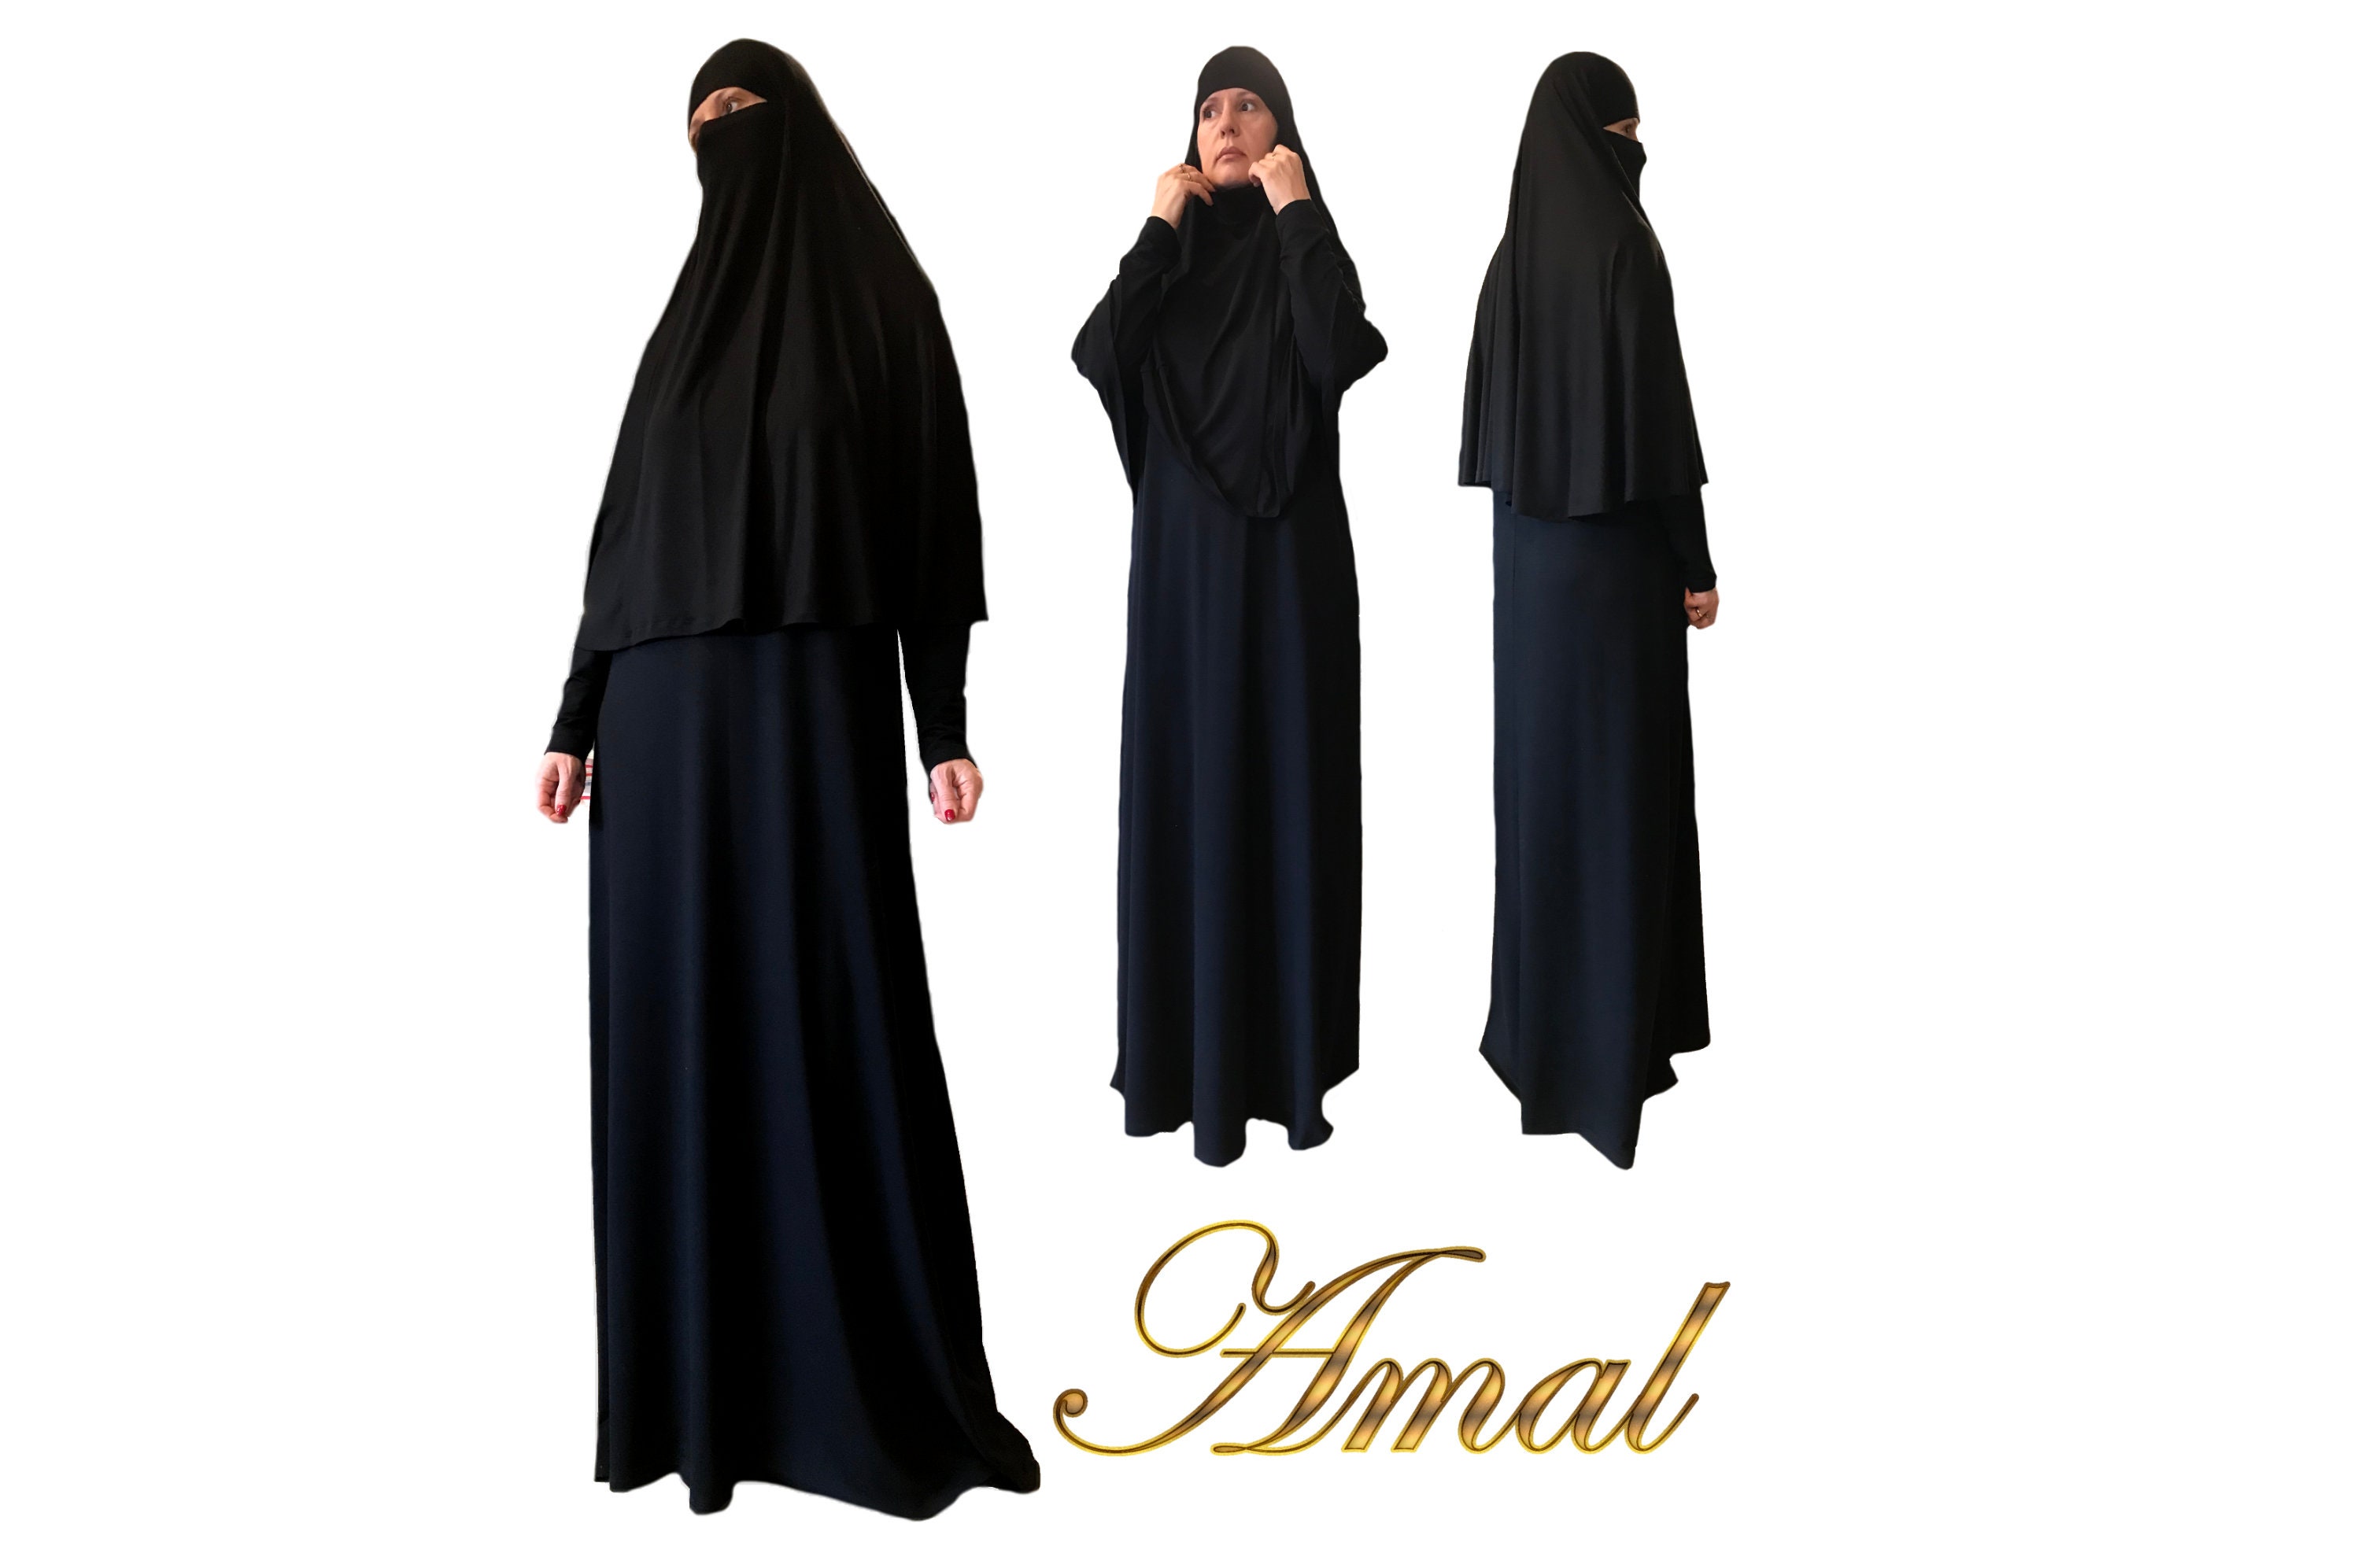 egypte niqab hijab jilbab burqa